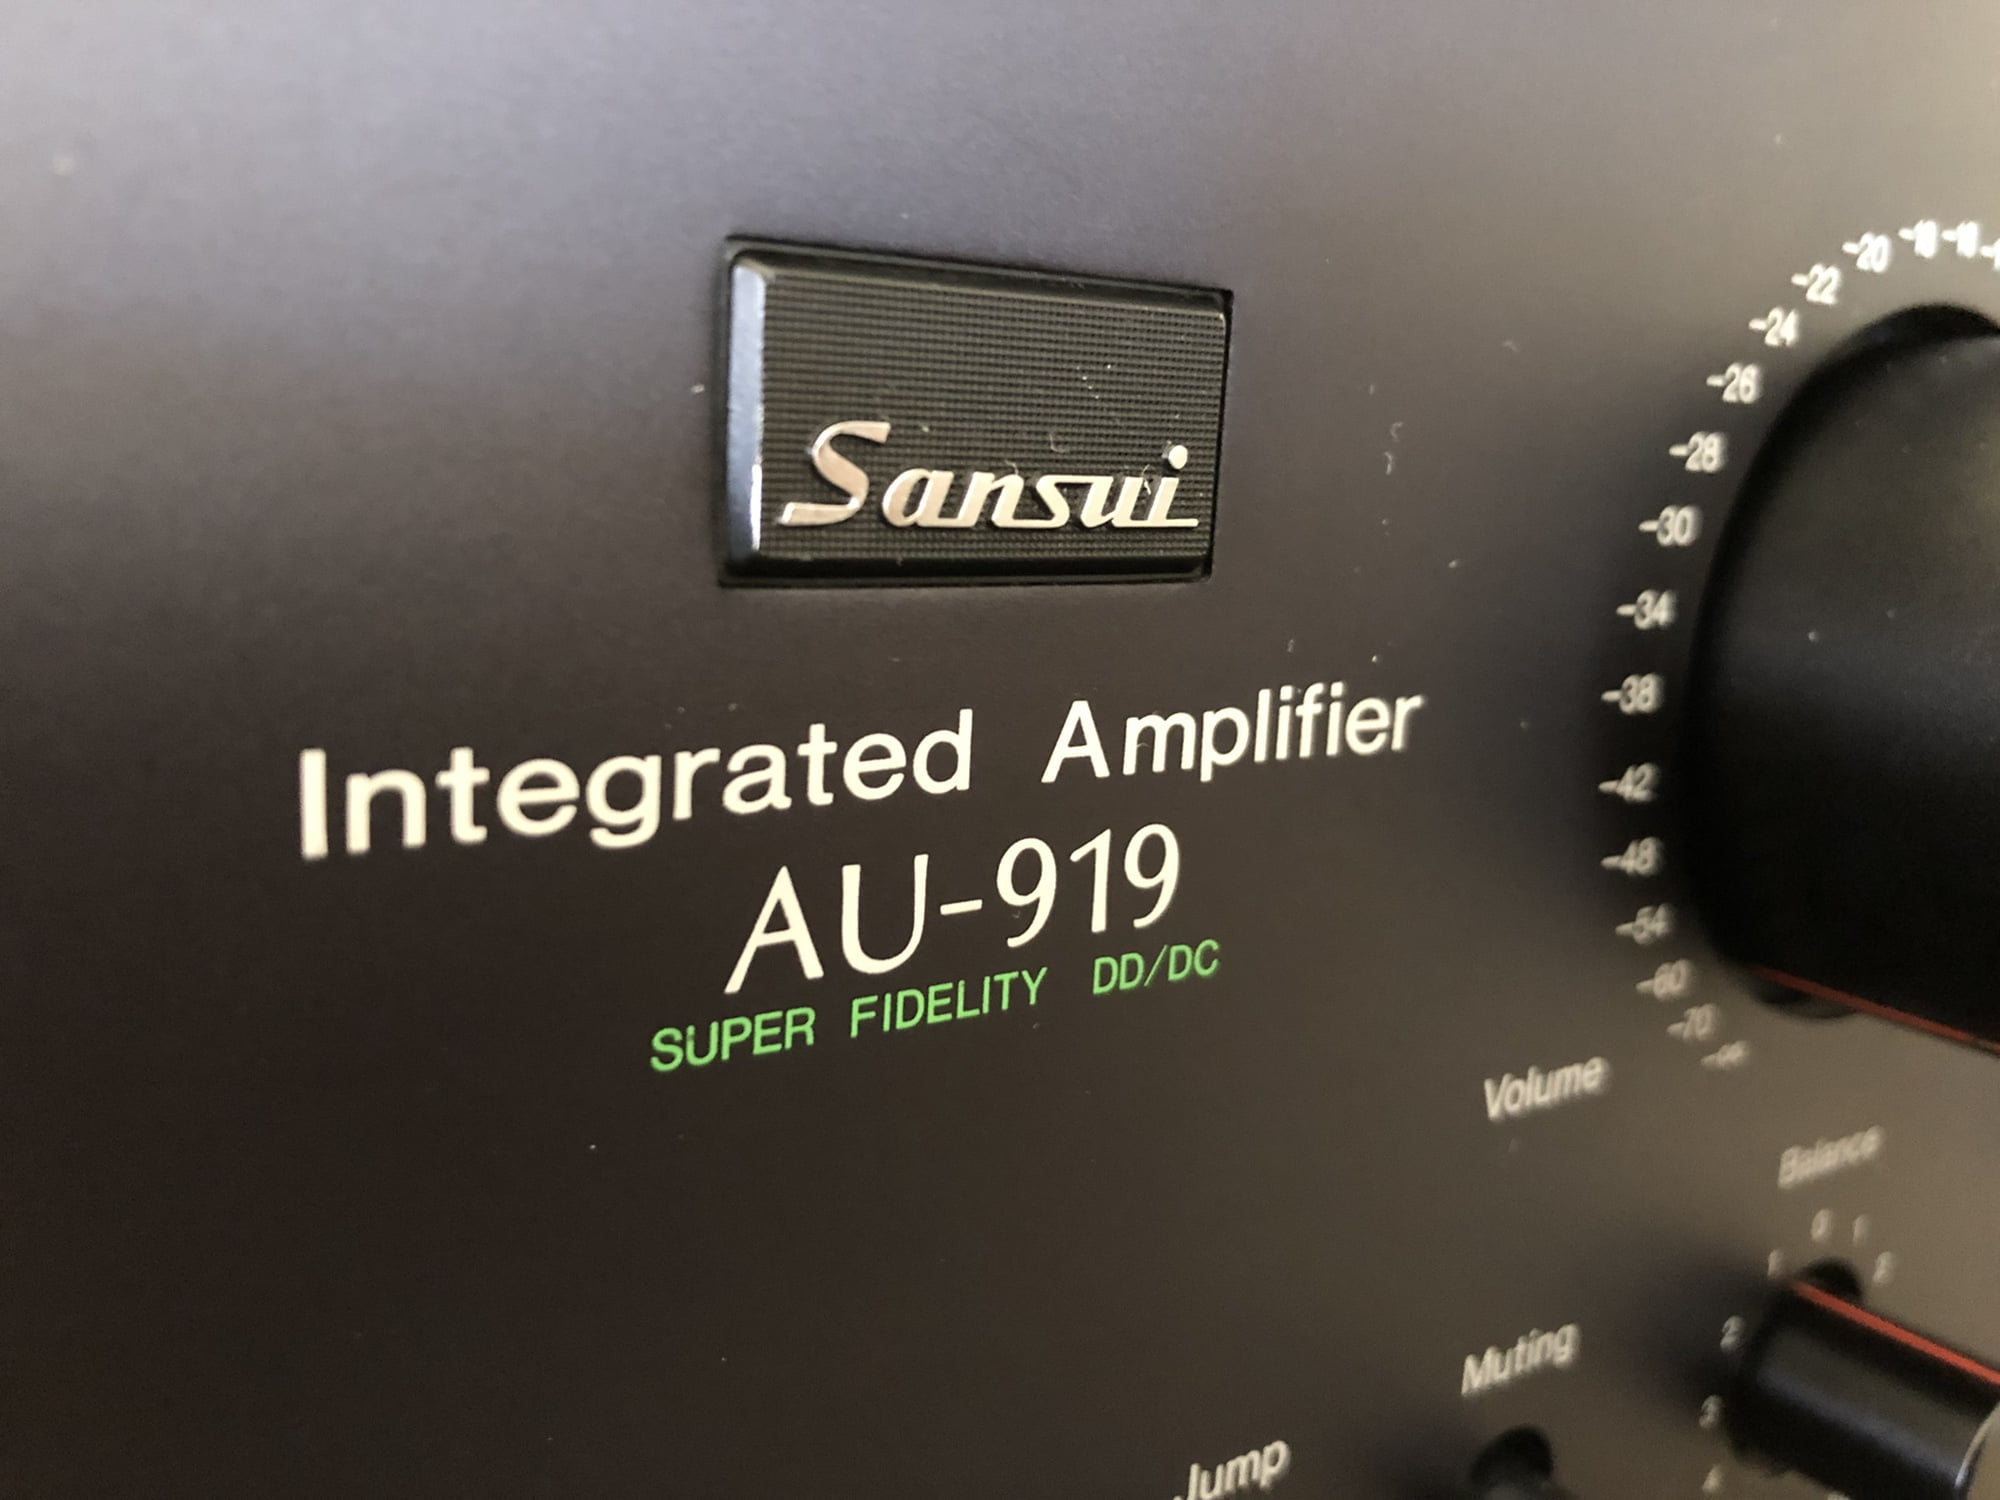 Sansui AU-919 Integrated Amplifier